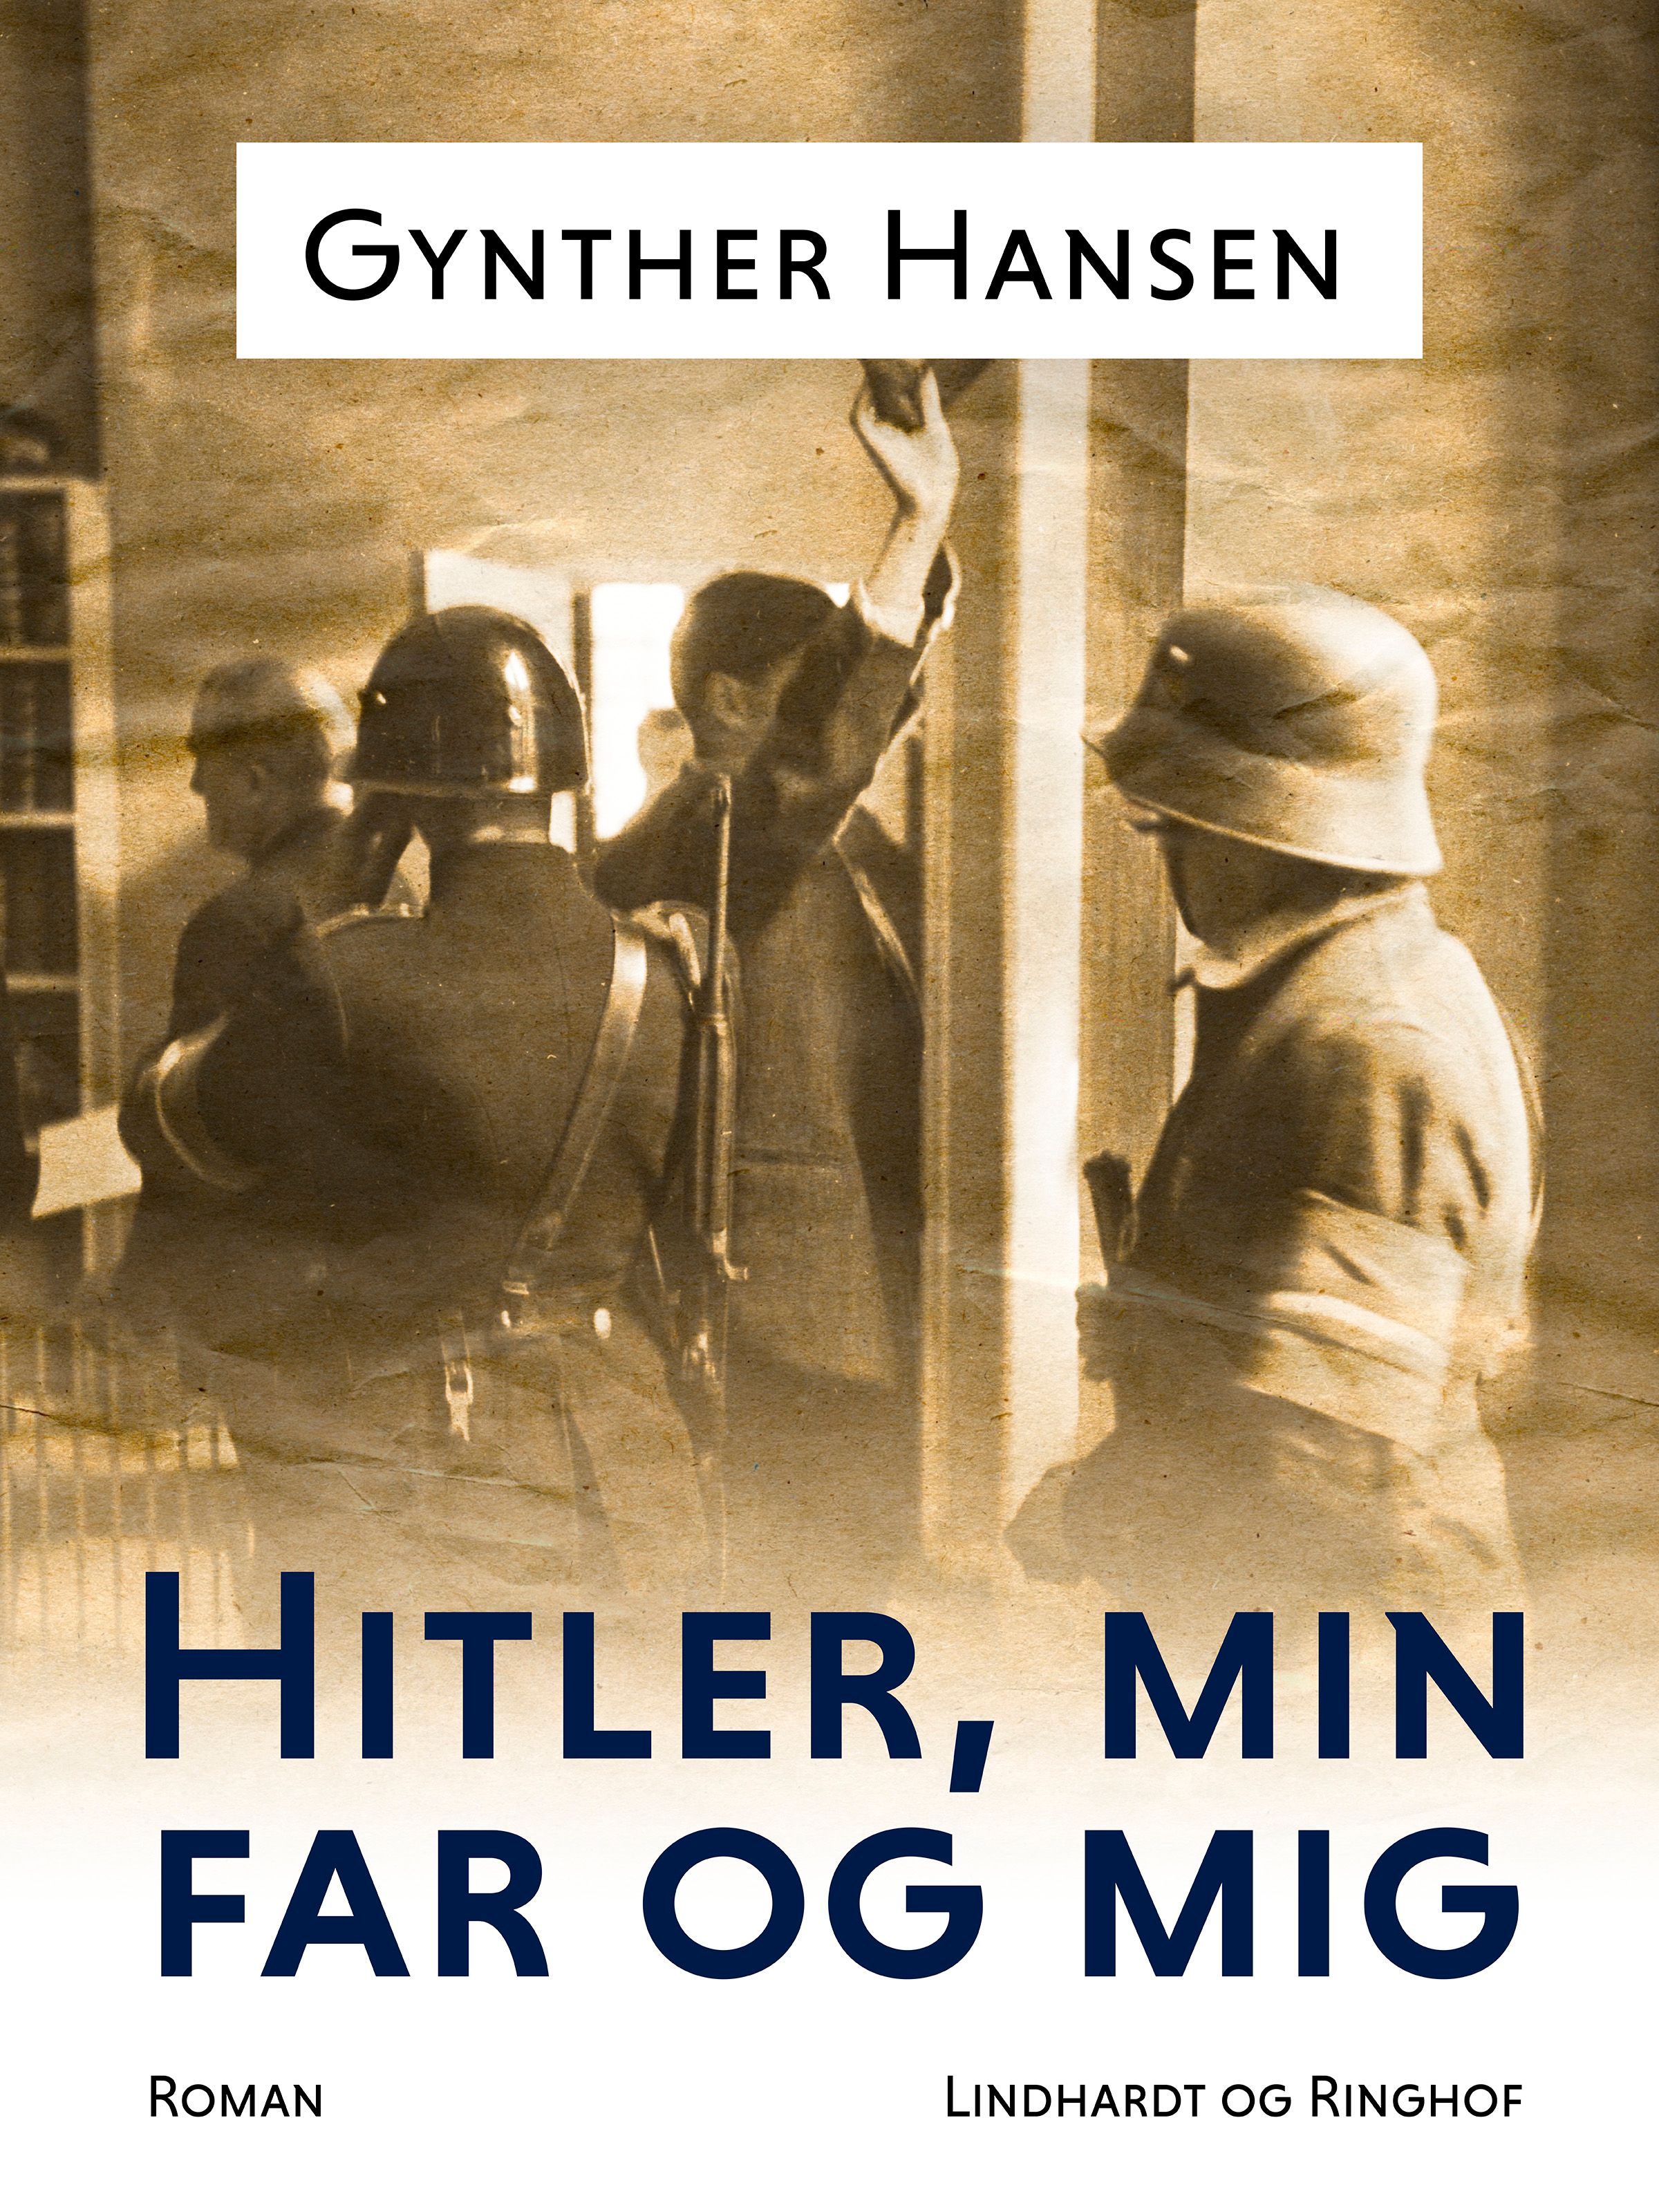 Hitler, min far og mig, e-bok av Gynther Hansen